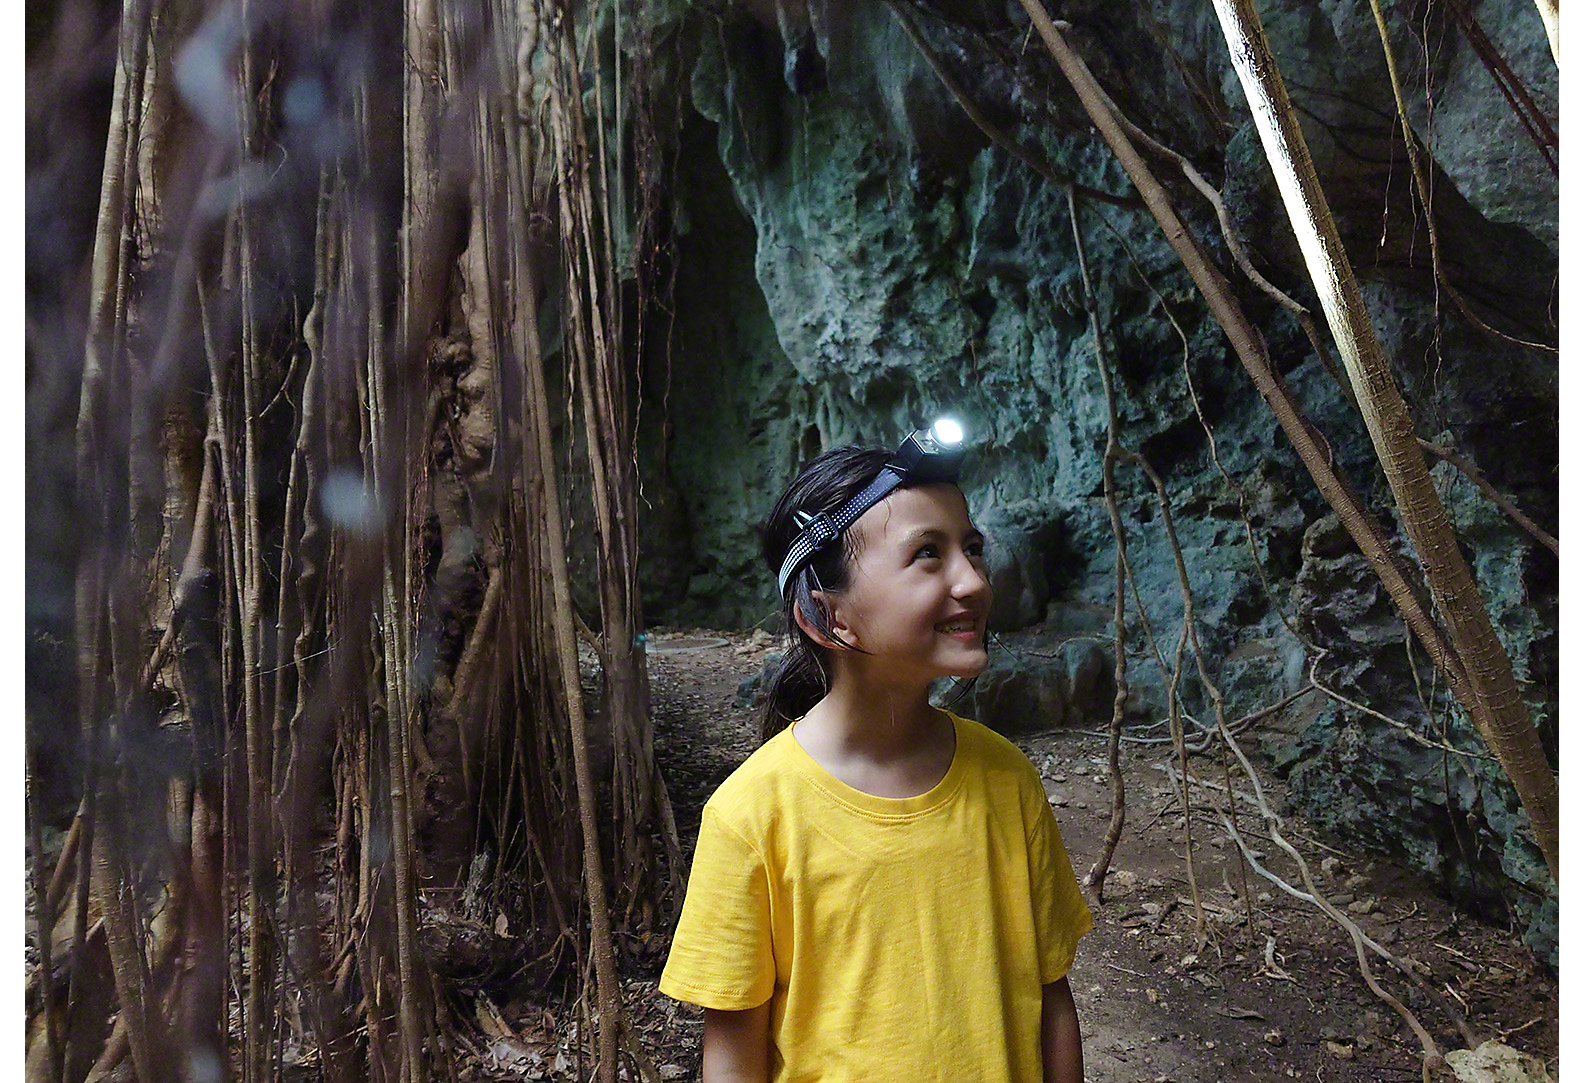 Deklica v rumeni majici z naglavno svetilko hodi med drevesi in skalnatim pobočjem